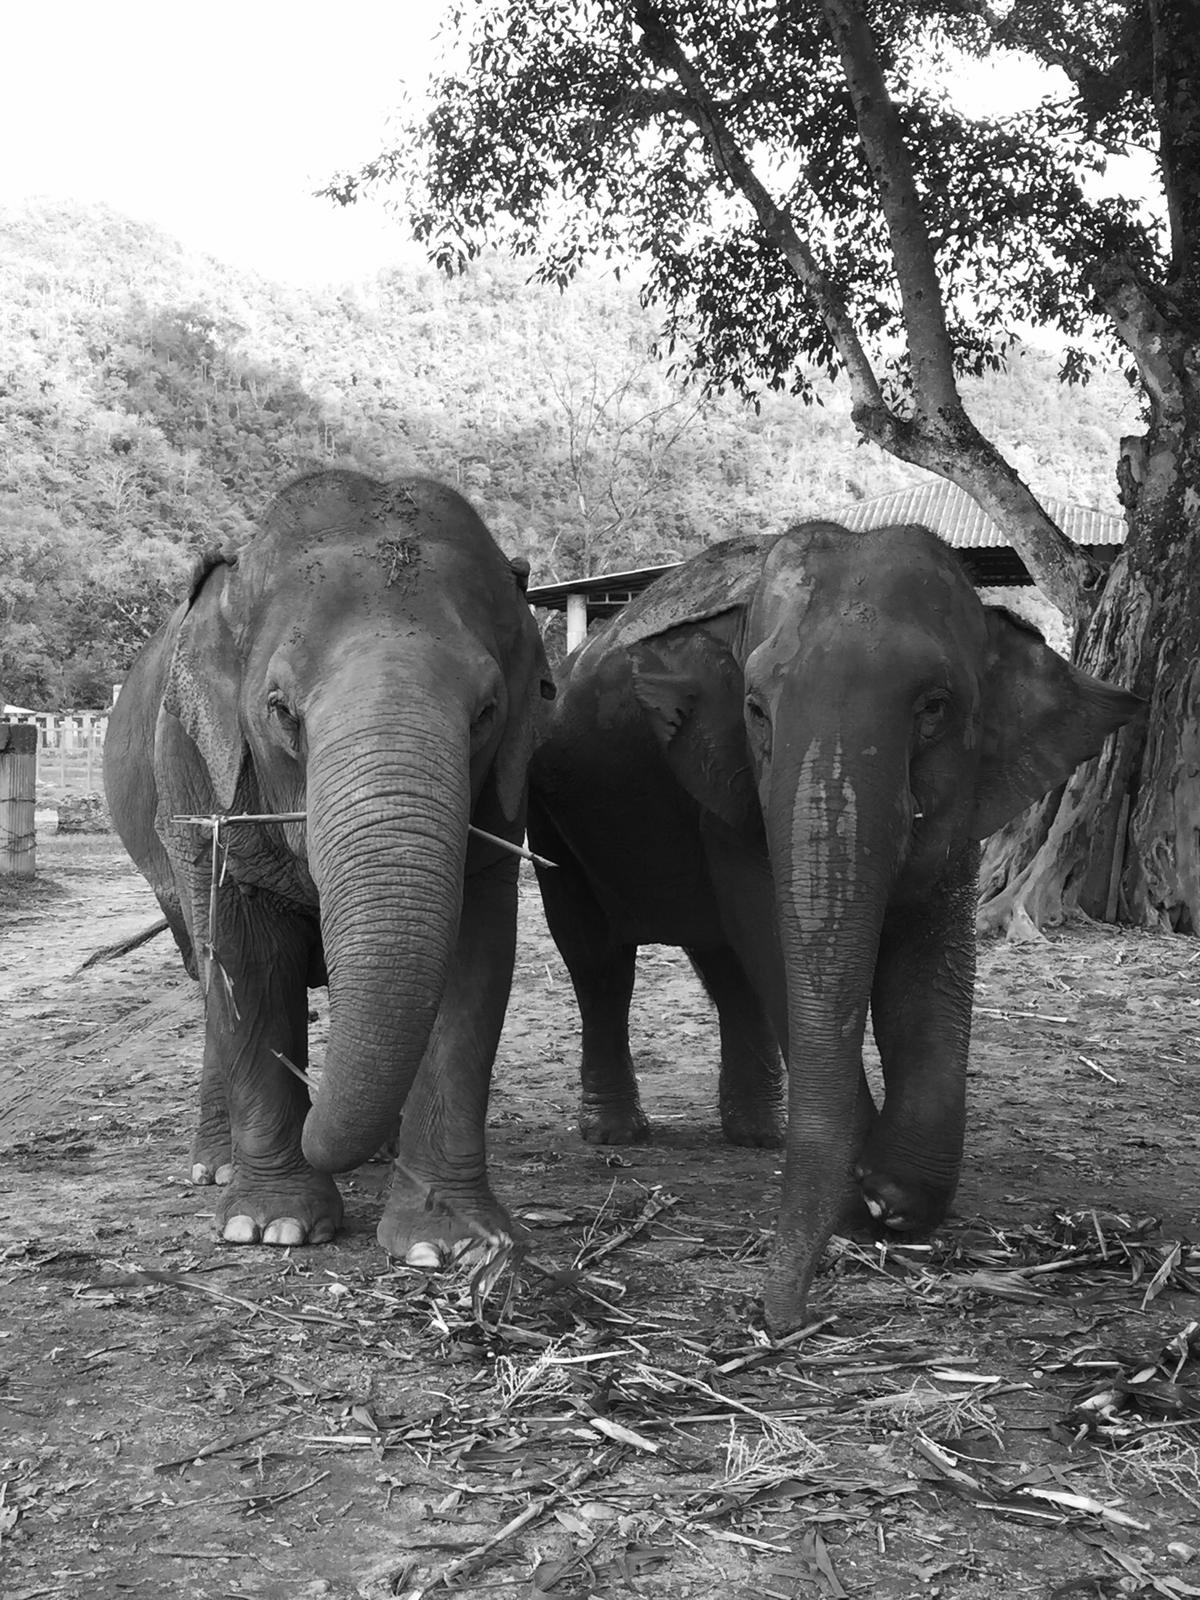 Réserve et refuge d'éléphants en Thaïlande - faire un don